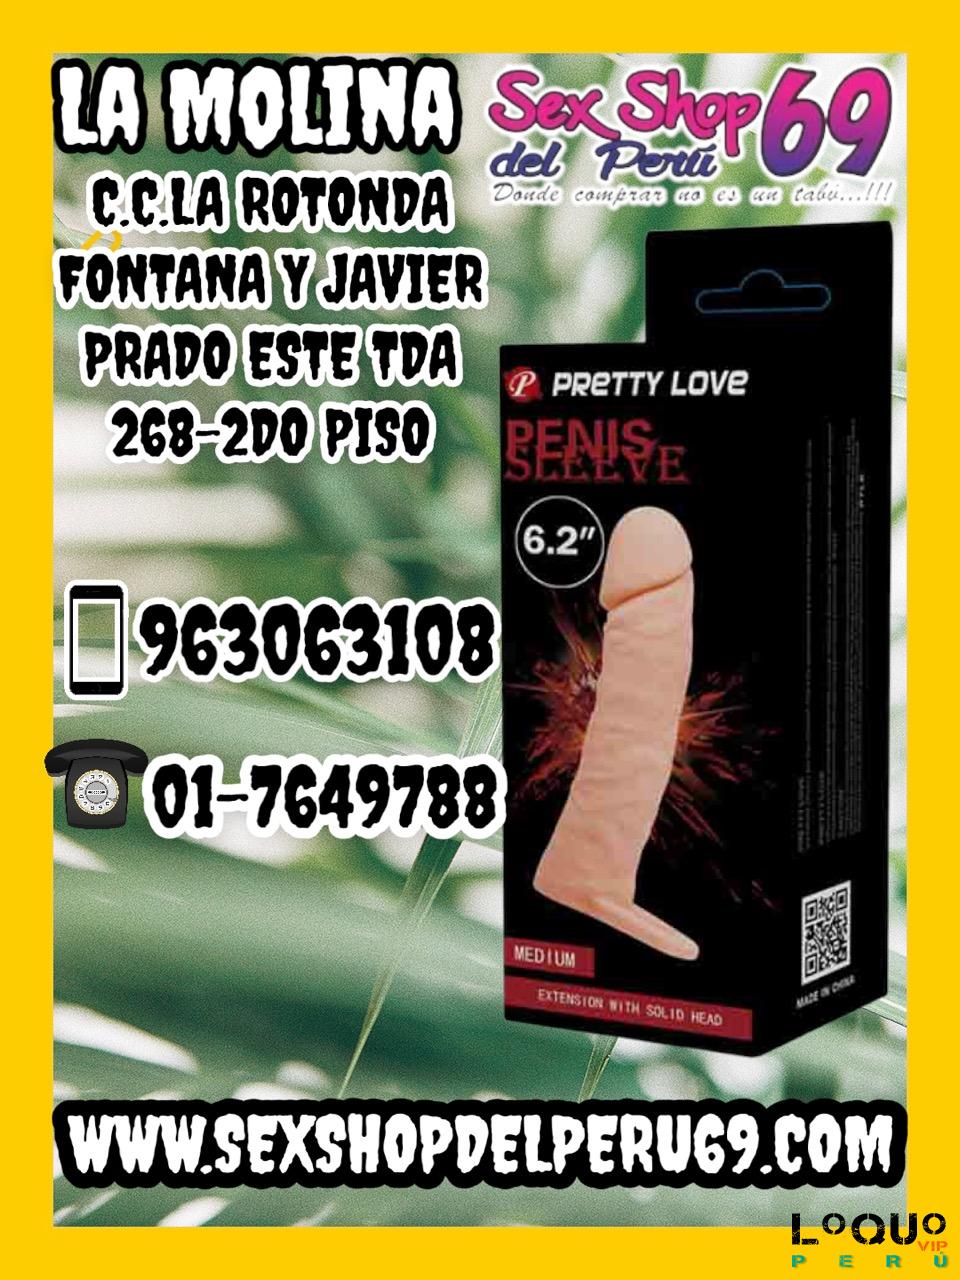 Sex Shop Lima Metropolitana: FUNDA FANTASY X-TENSIONS DILDOS SEXSHOP69 LA MOLINA DELIVERY GRATIS